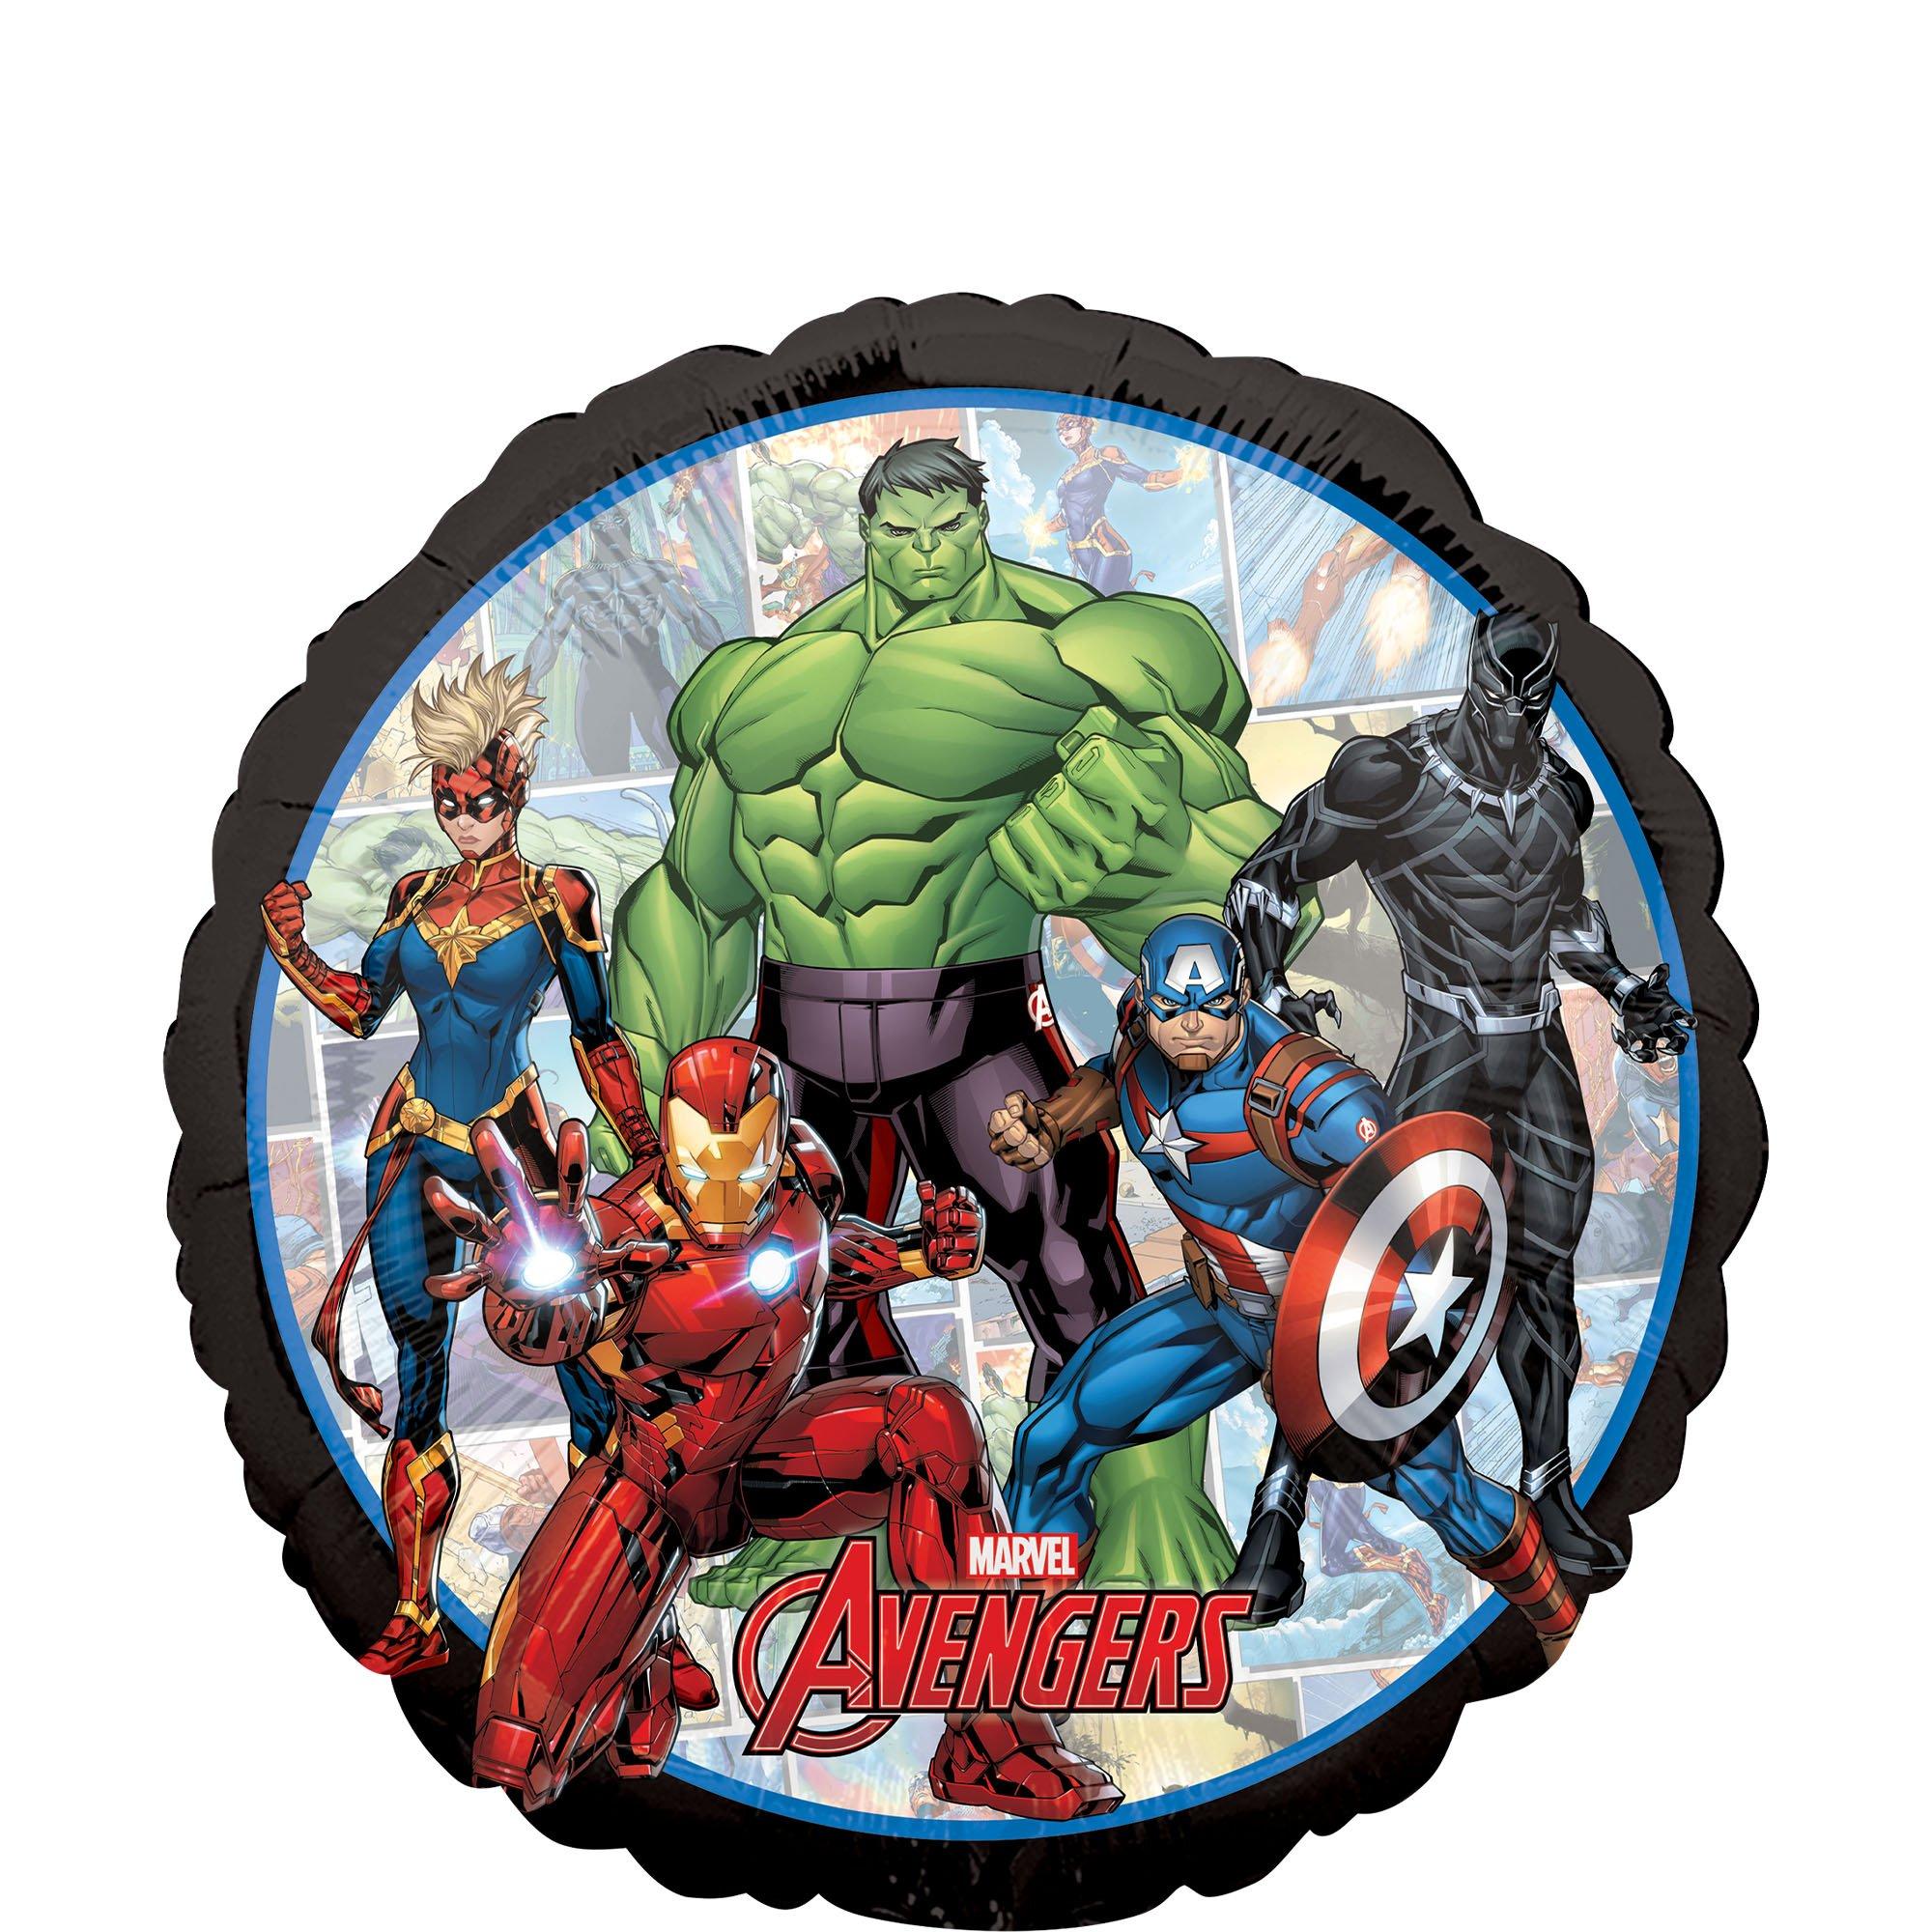 Marvel Avengers Unite